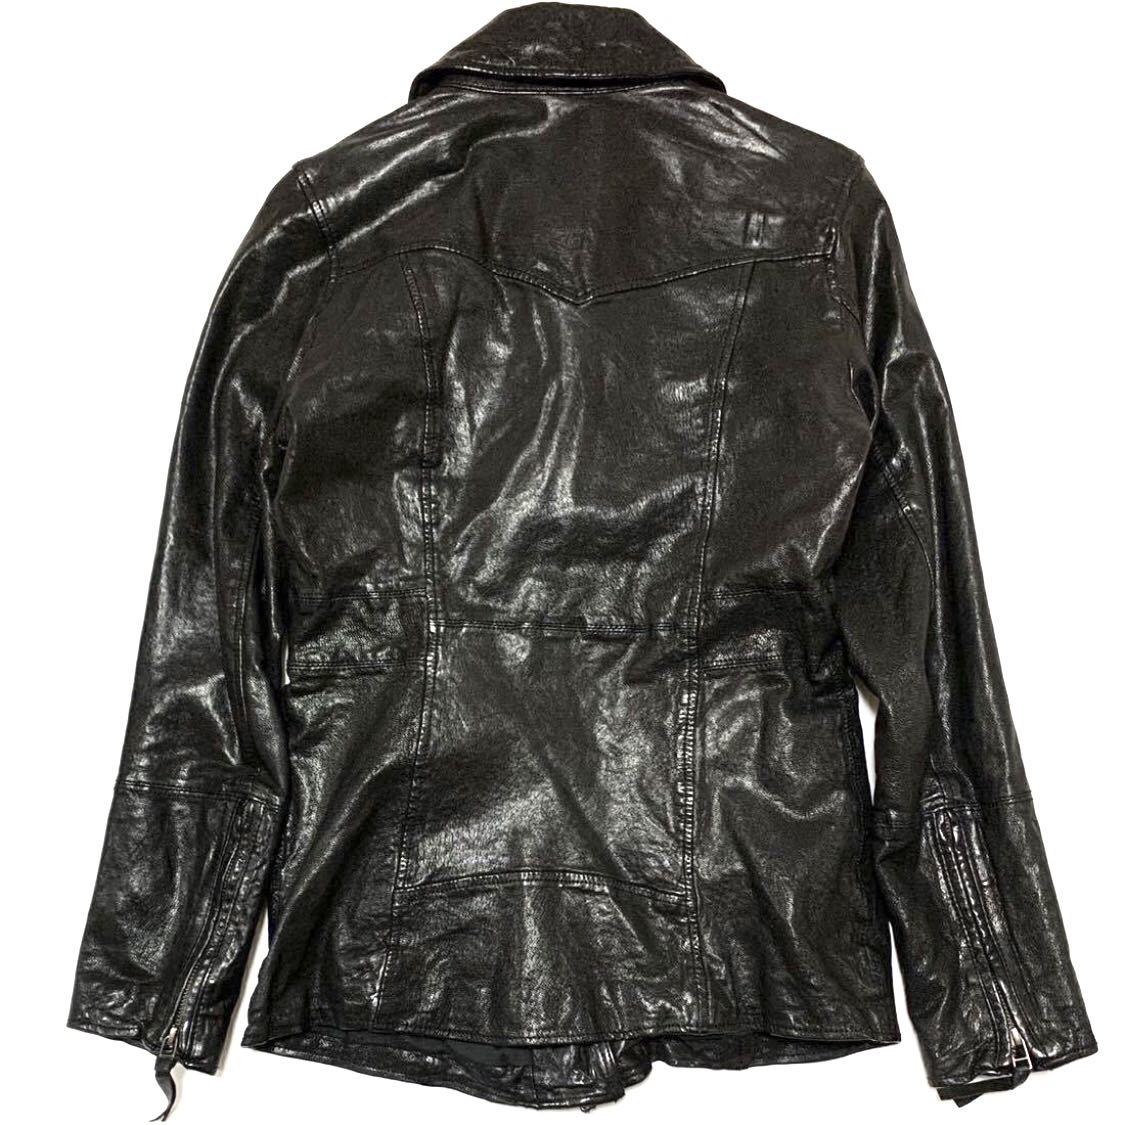  Moussy прекрасный товар натуральная кожа байкерская куртка черный чёрный кожаная куртка 